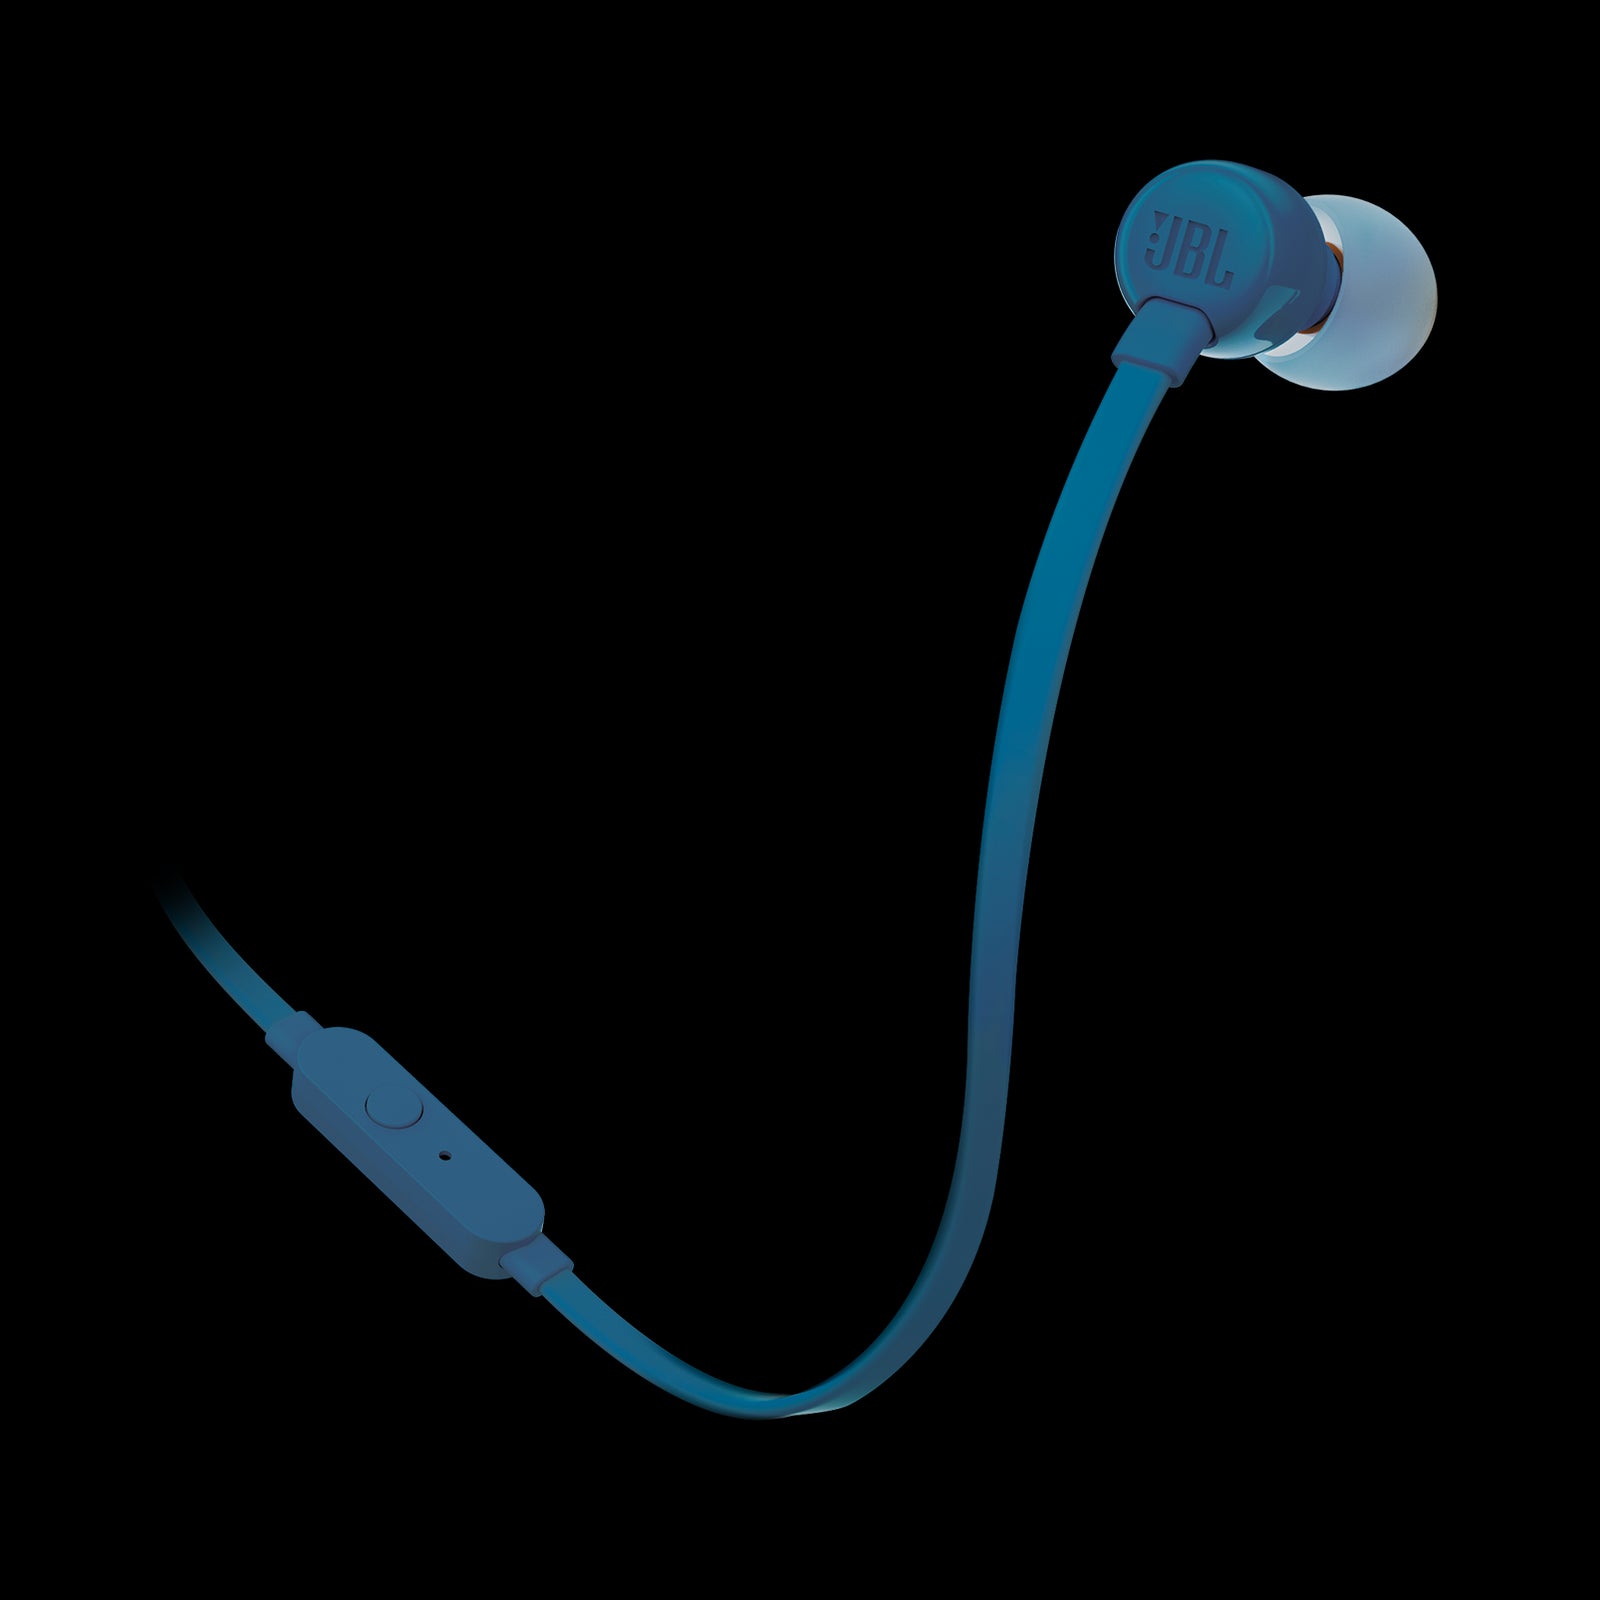 JBL - TUNE 110 Wired In-Ear Headphones - Blue